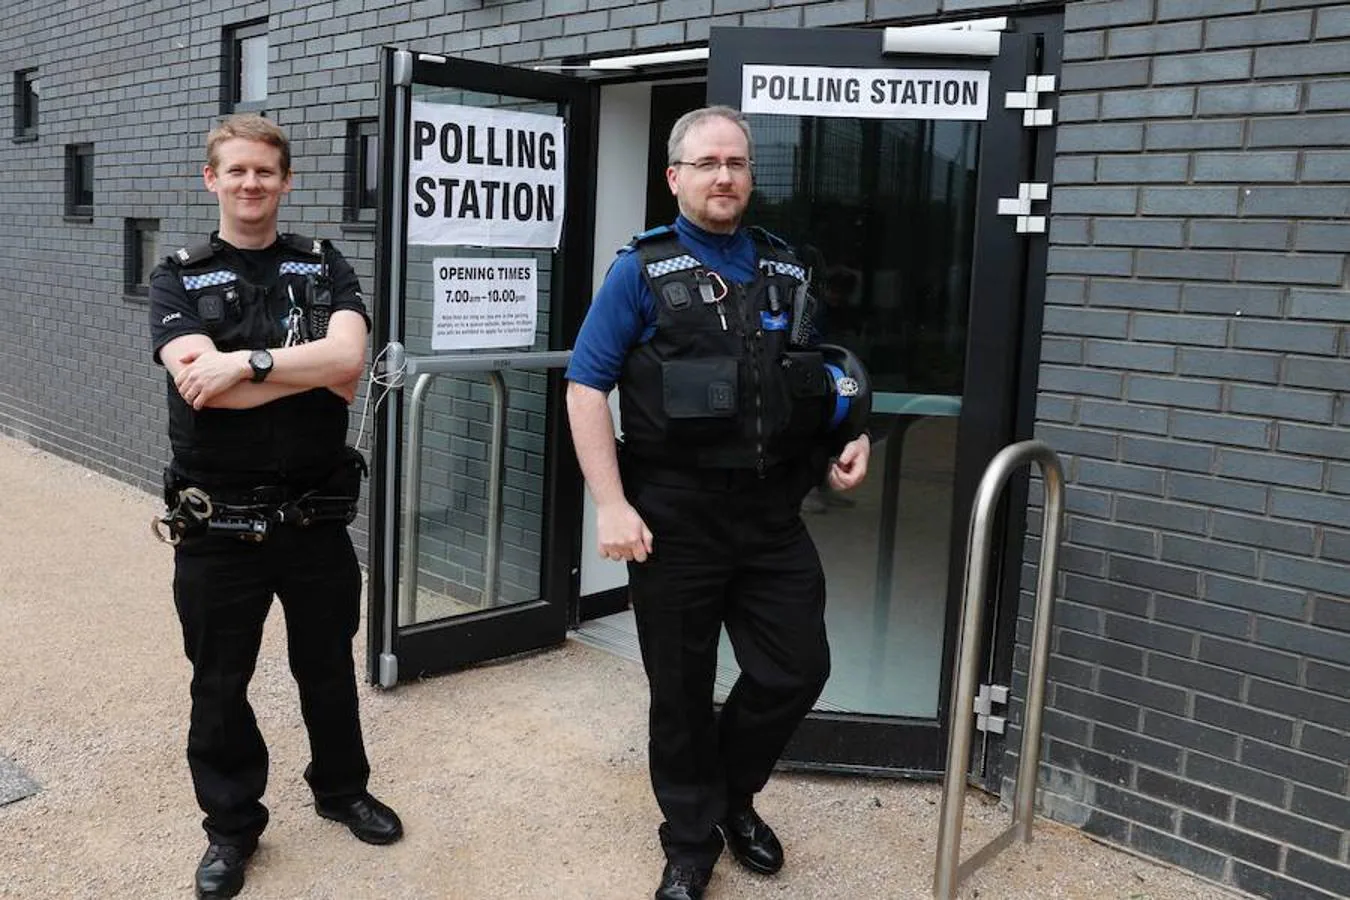 Vigilancia policial. Los oficiales de policía vigilan una mesa de votación en un centro deportivo en Fleet, al oeste de Londres.